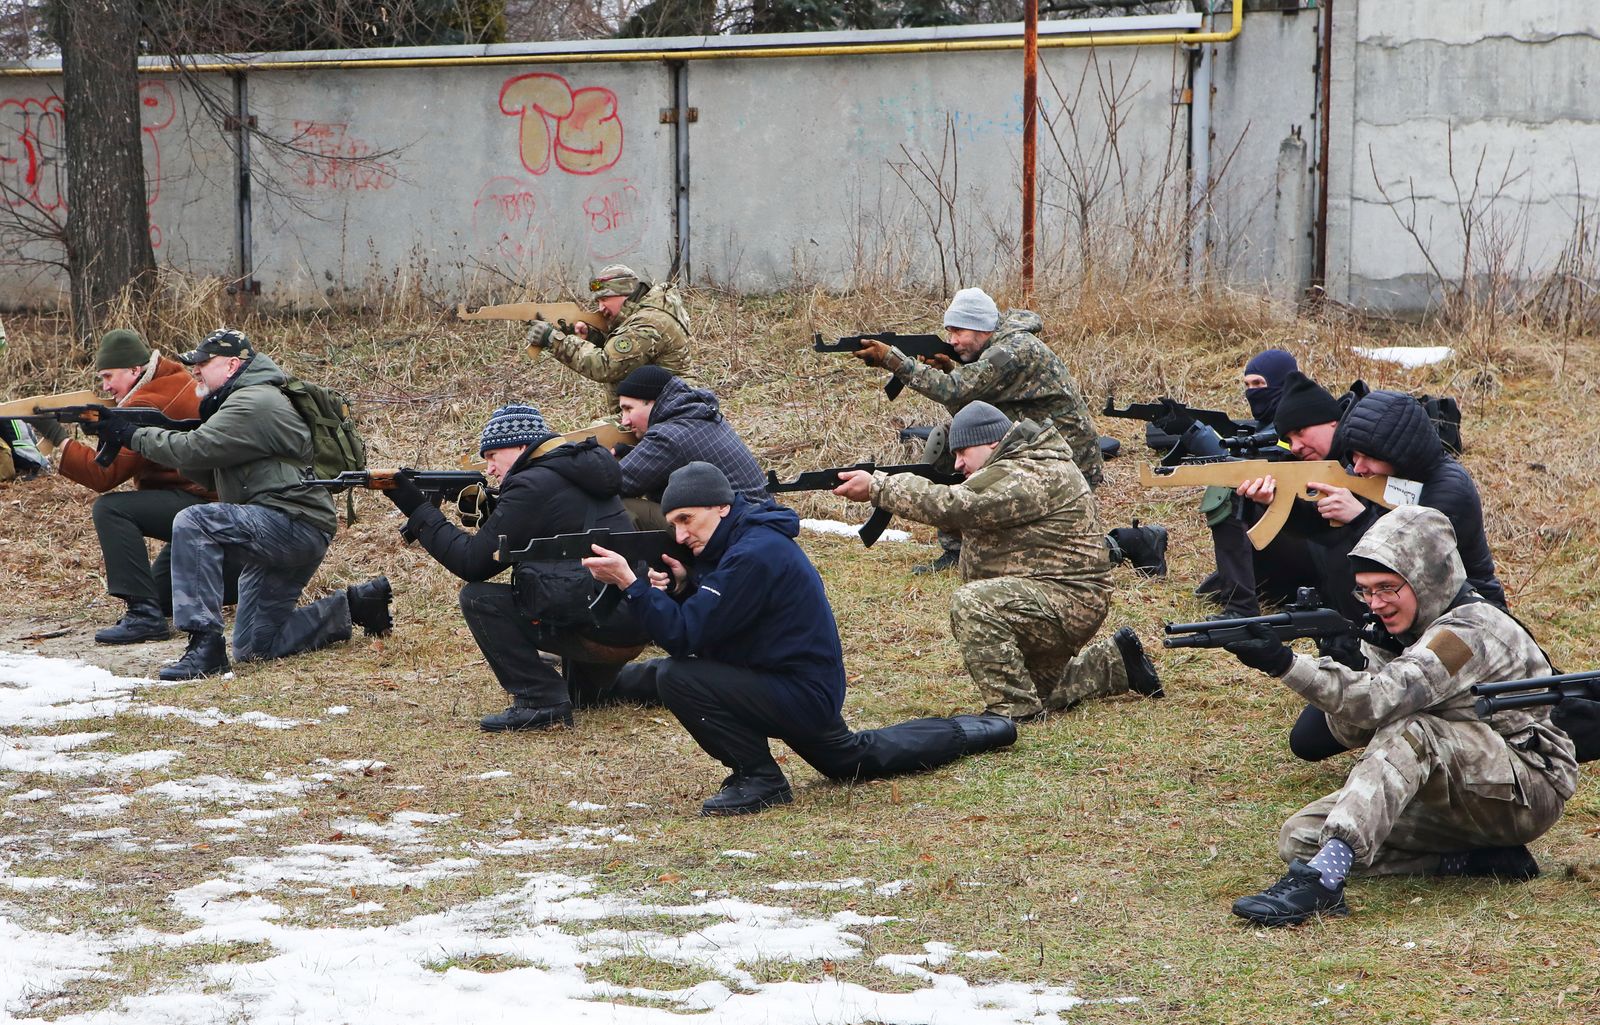 أشخاص يشاركون في تمرين عسكري للمدنيين أجراه قدامى المحاربين في كتيبة آزوف التابعة للحرس الوطني الأوكراني في خاركوف، أوكرانيا 19 فبراير 2022.  - REUTERS